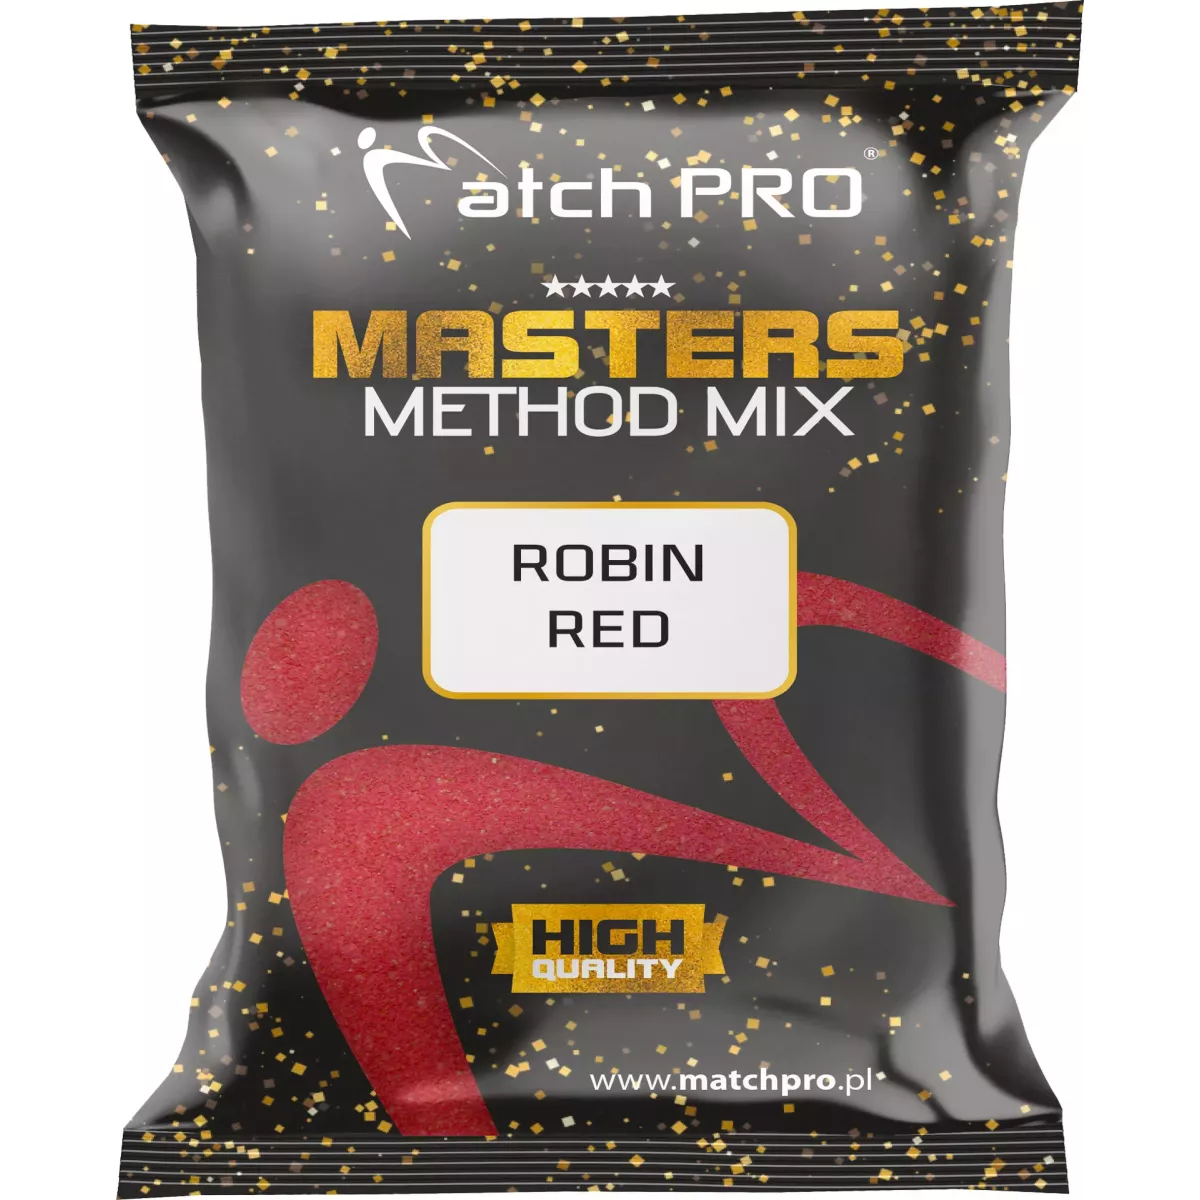 978251 Zanęta MatchPro Method Mix Masters 700g - ROBIN RED